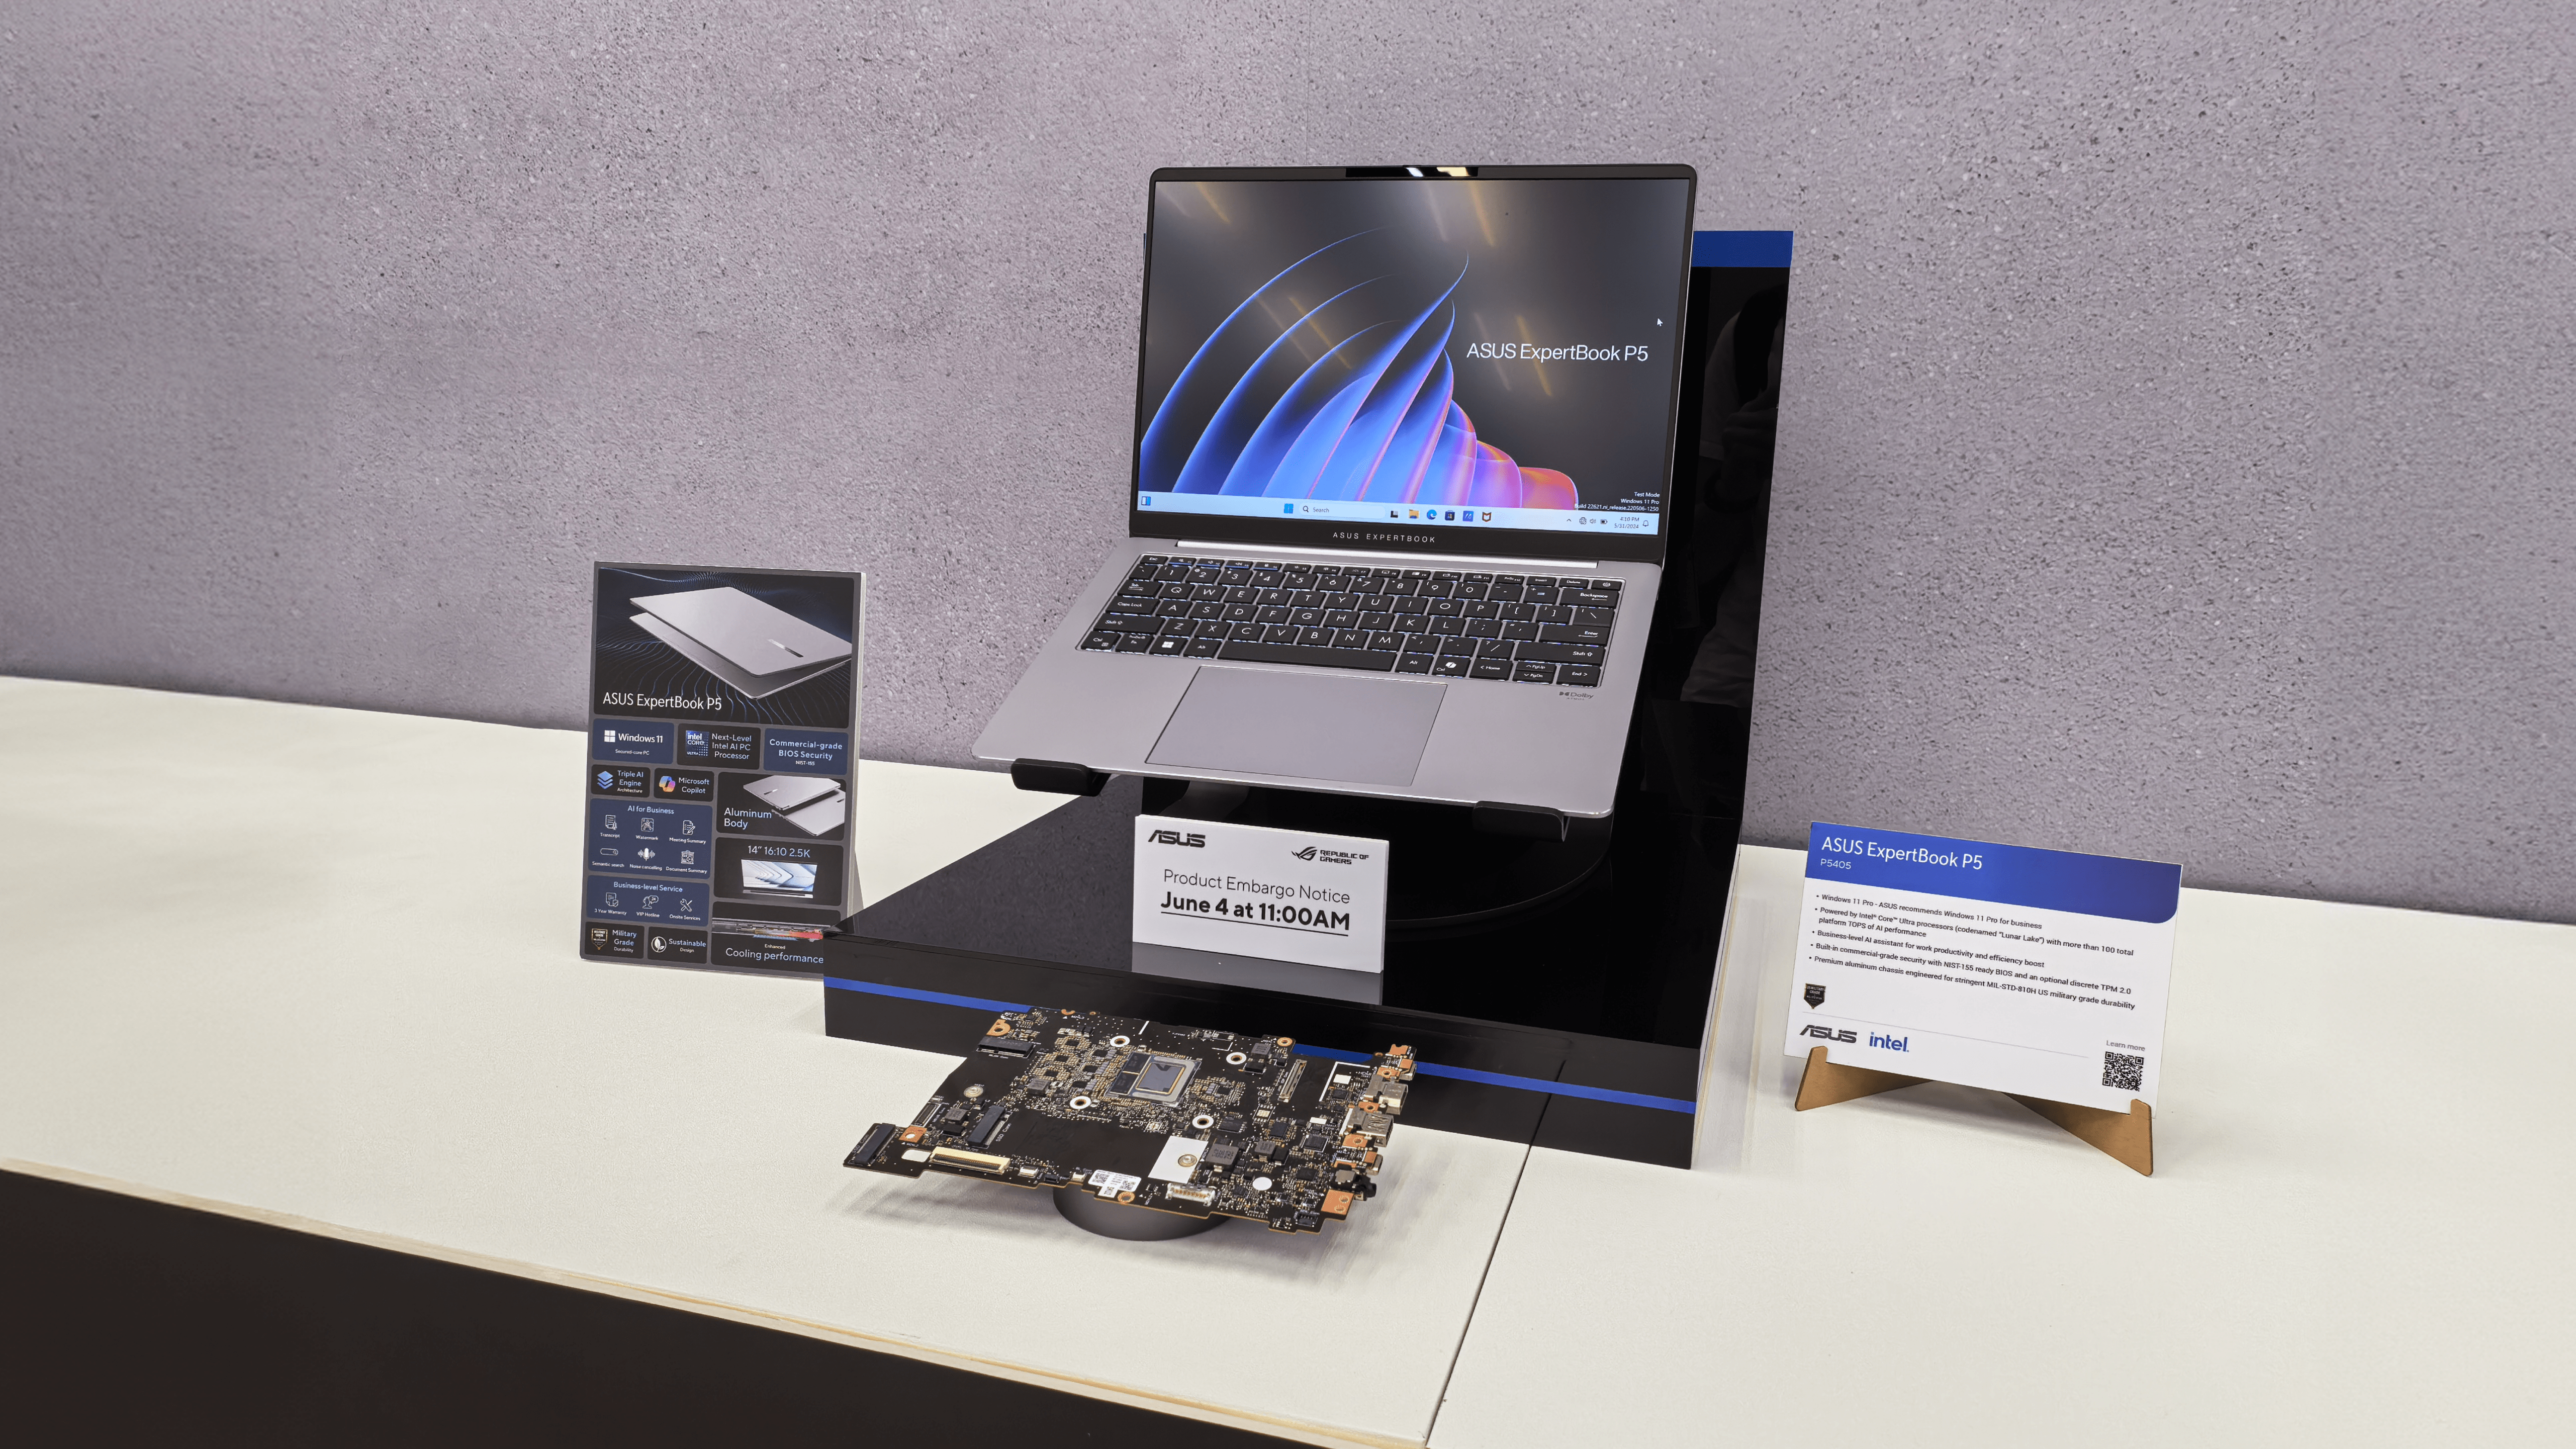 Laptop ASUS ExpertBook P5 na czarnym stojaku na białym stole, z tabliczką informacyjną dotyczącą specyfikacji technicznej i datą embargo produktowego.